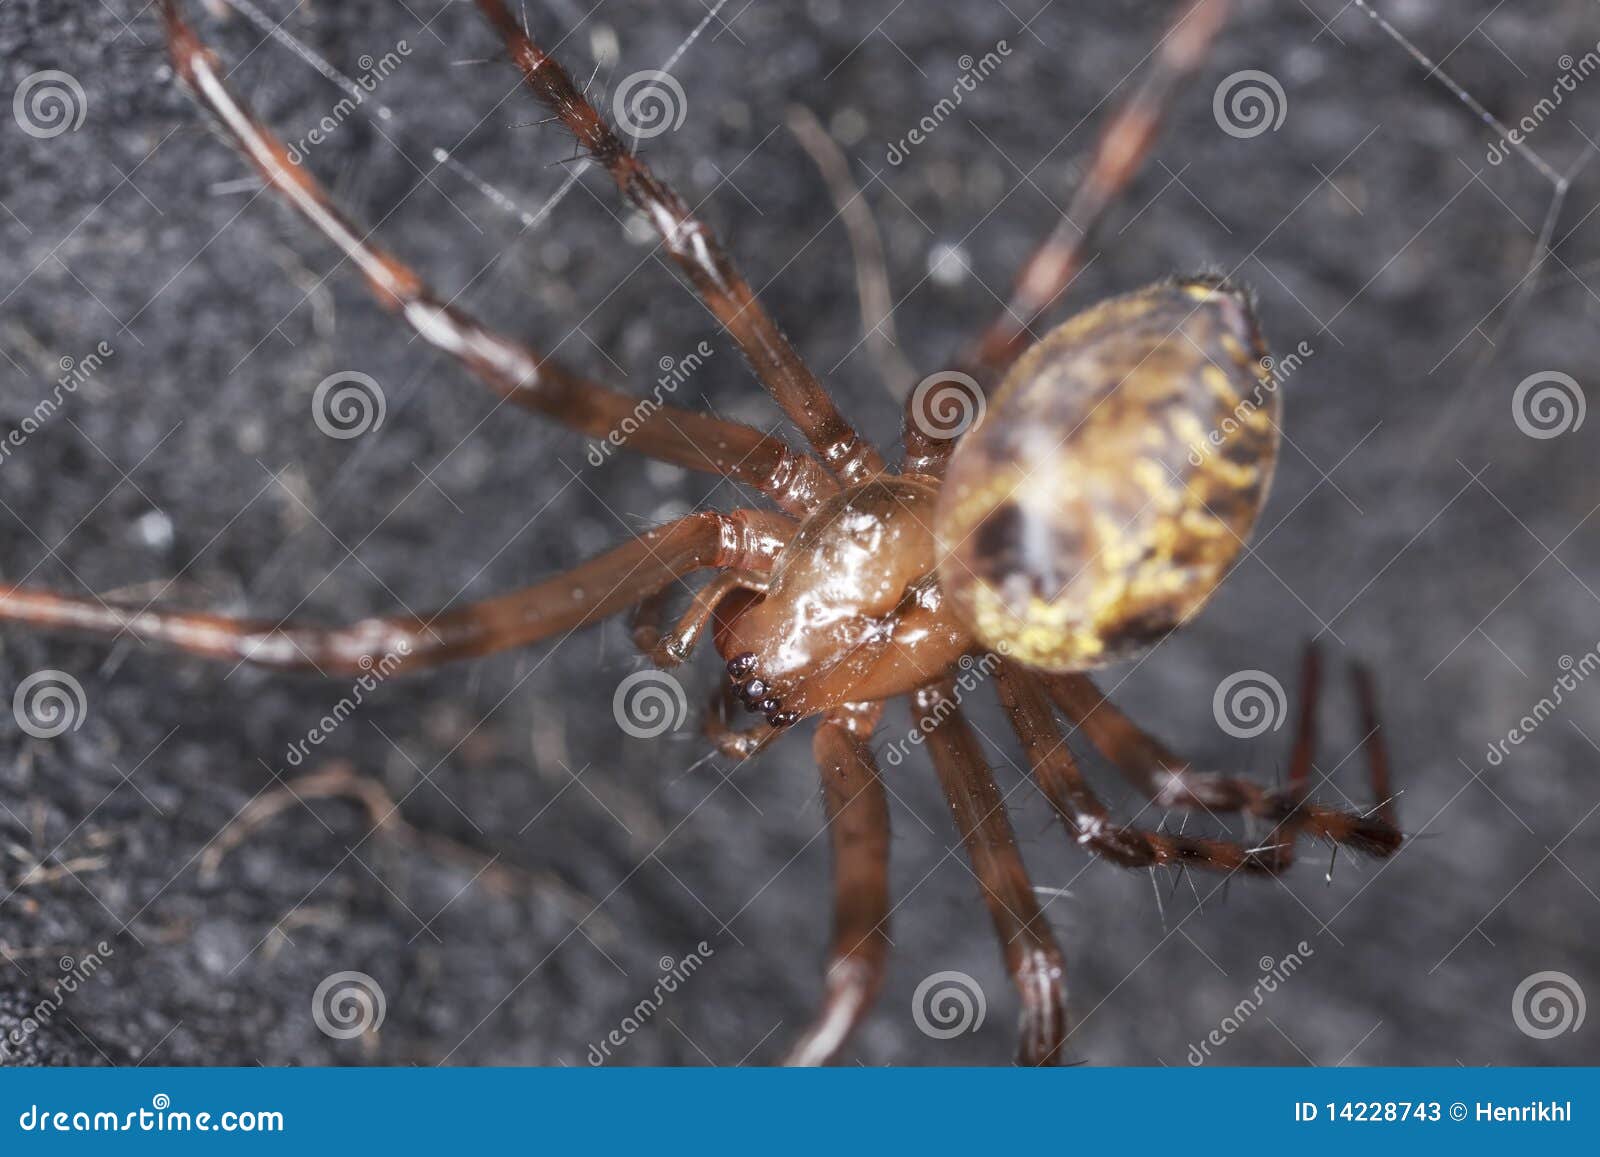 european cave spider (meta menardi)